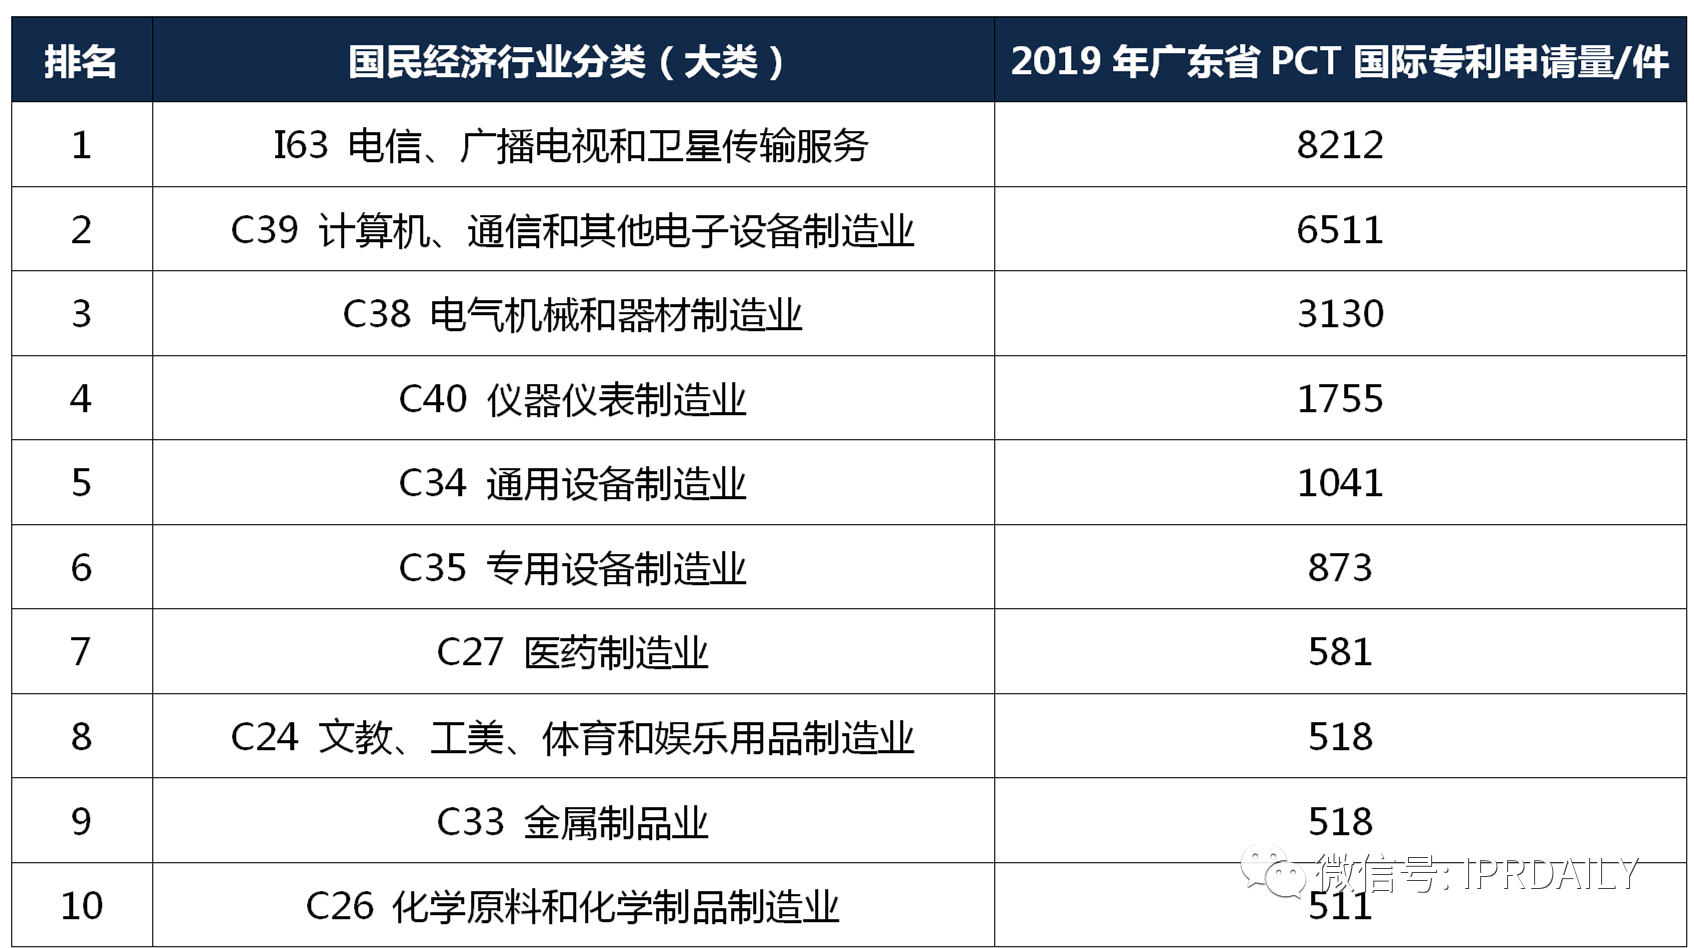 【独家发布】2019年广东省PCT国际专利申请数据报告